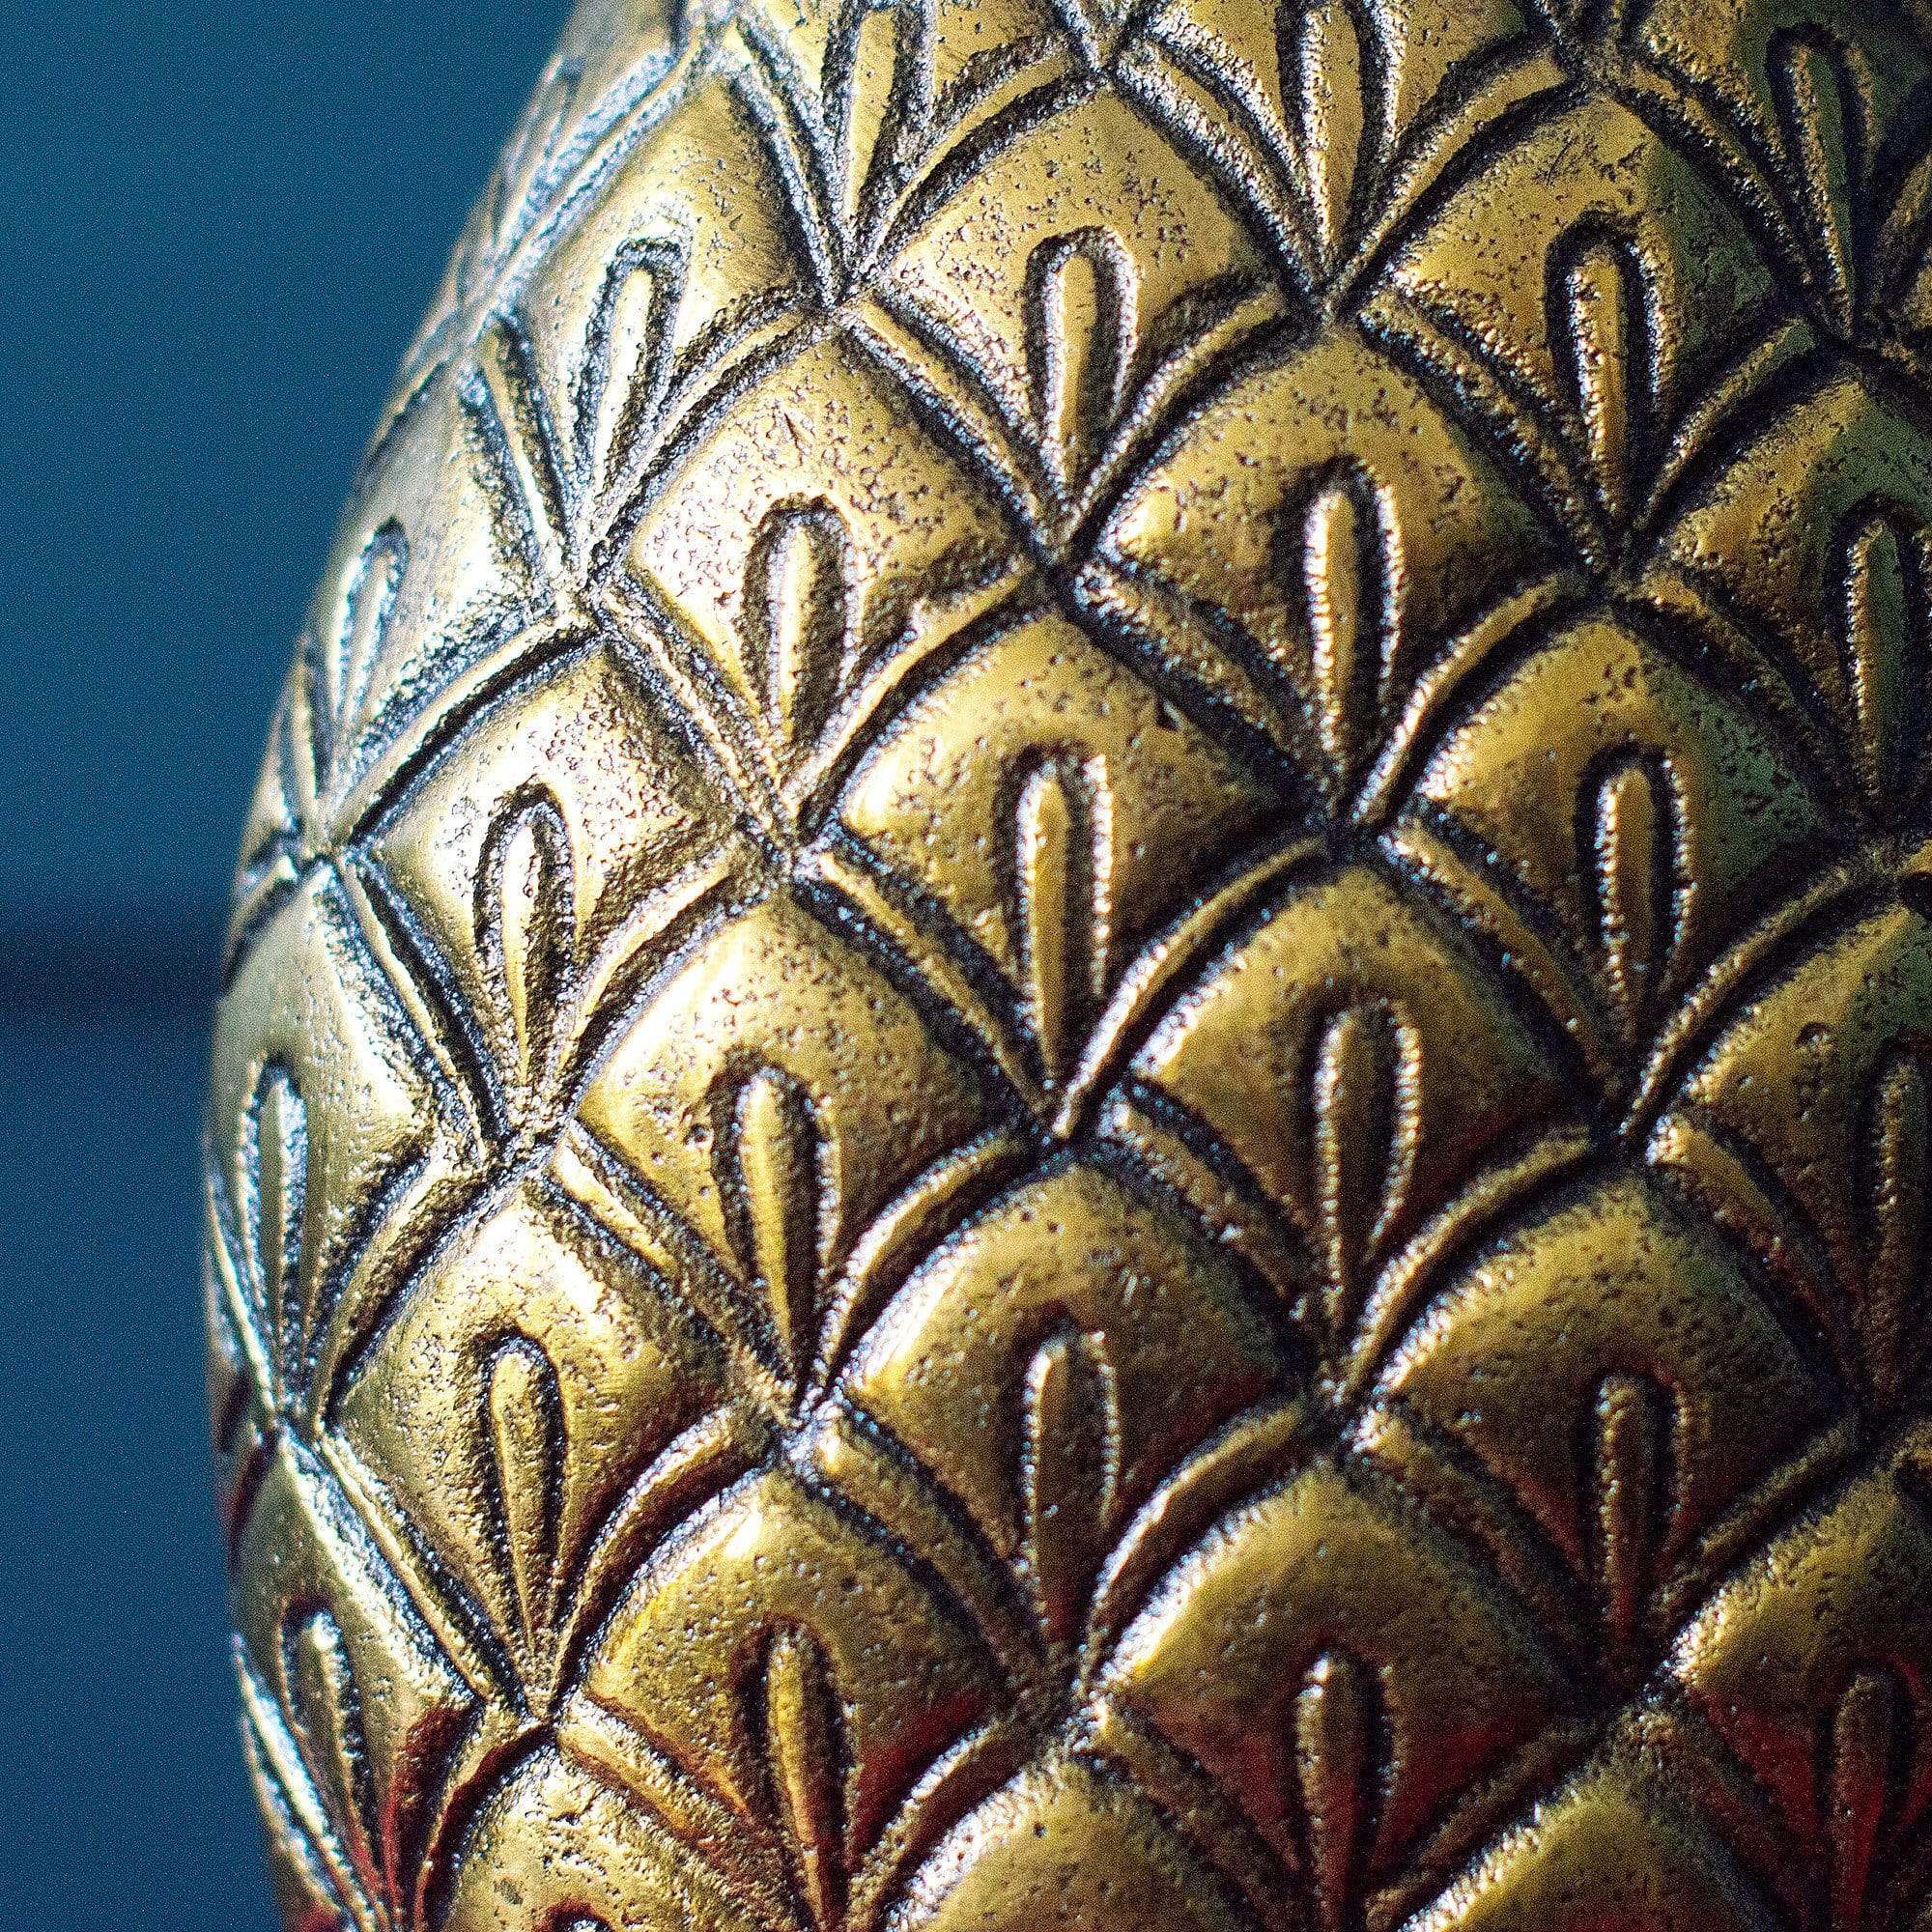 Handmade Brass Pineapple Vase